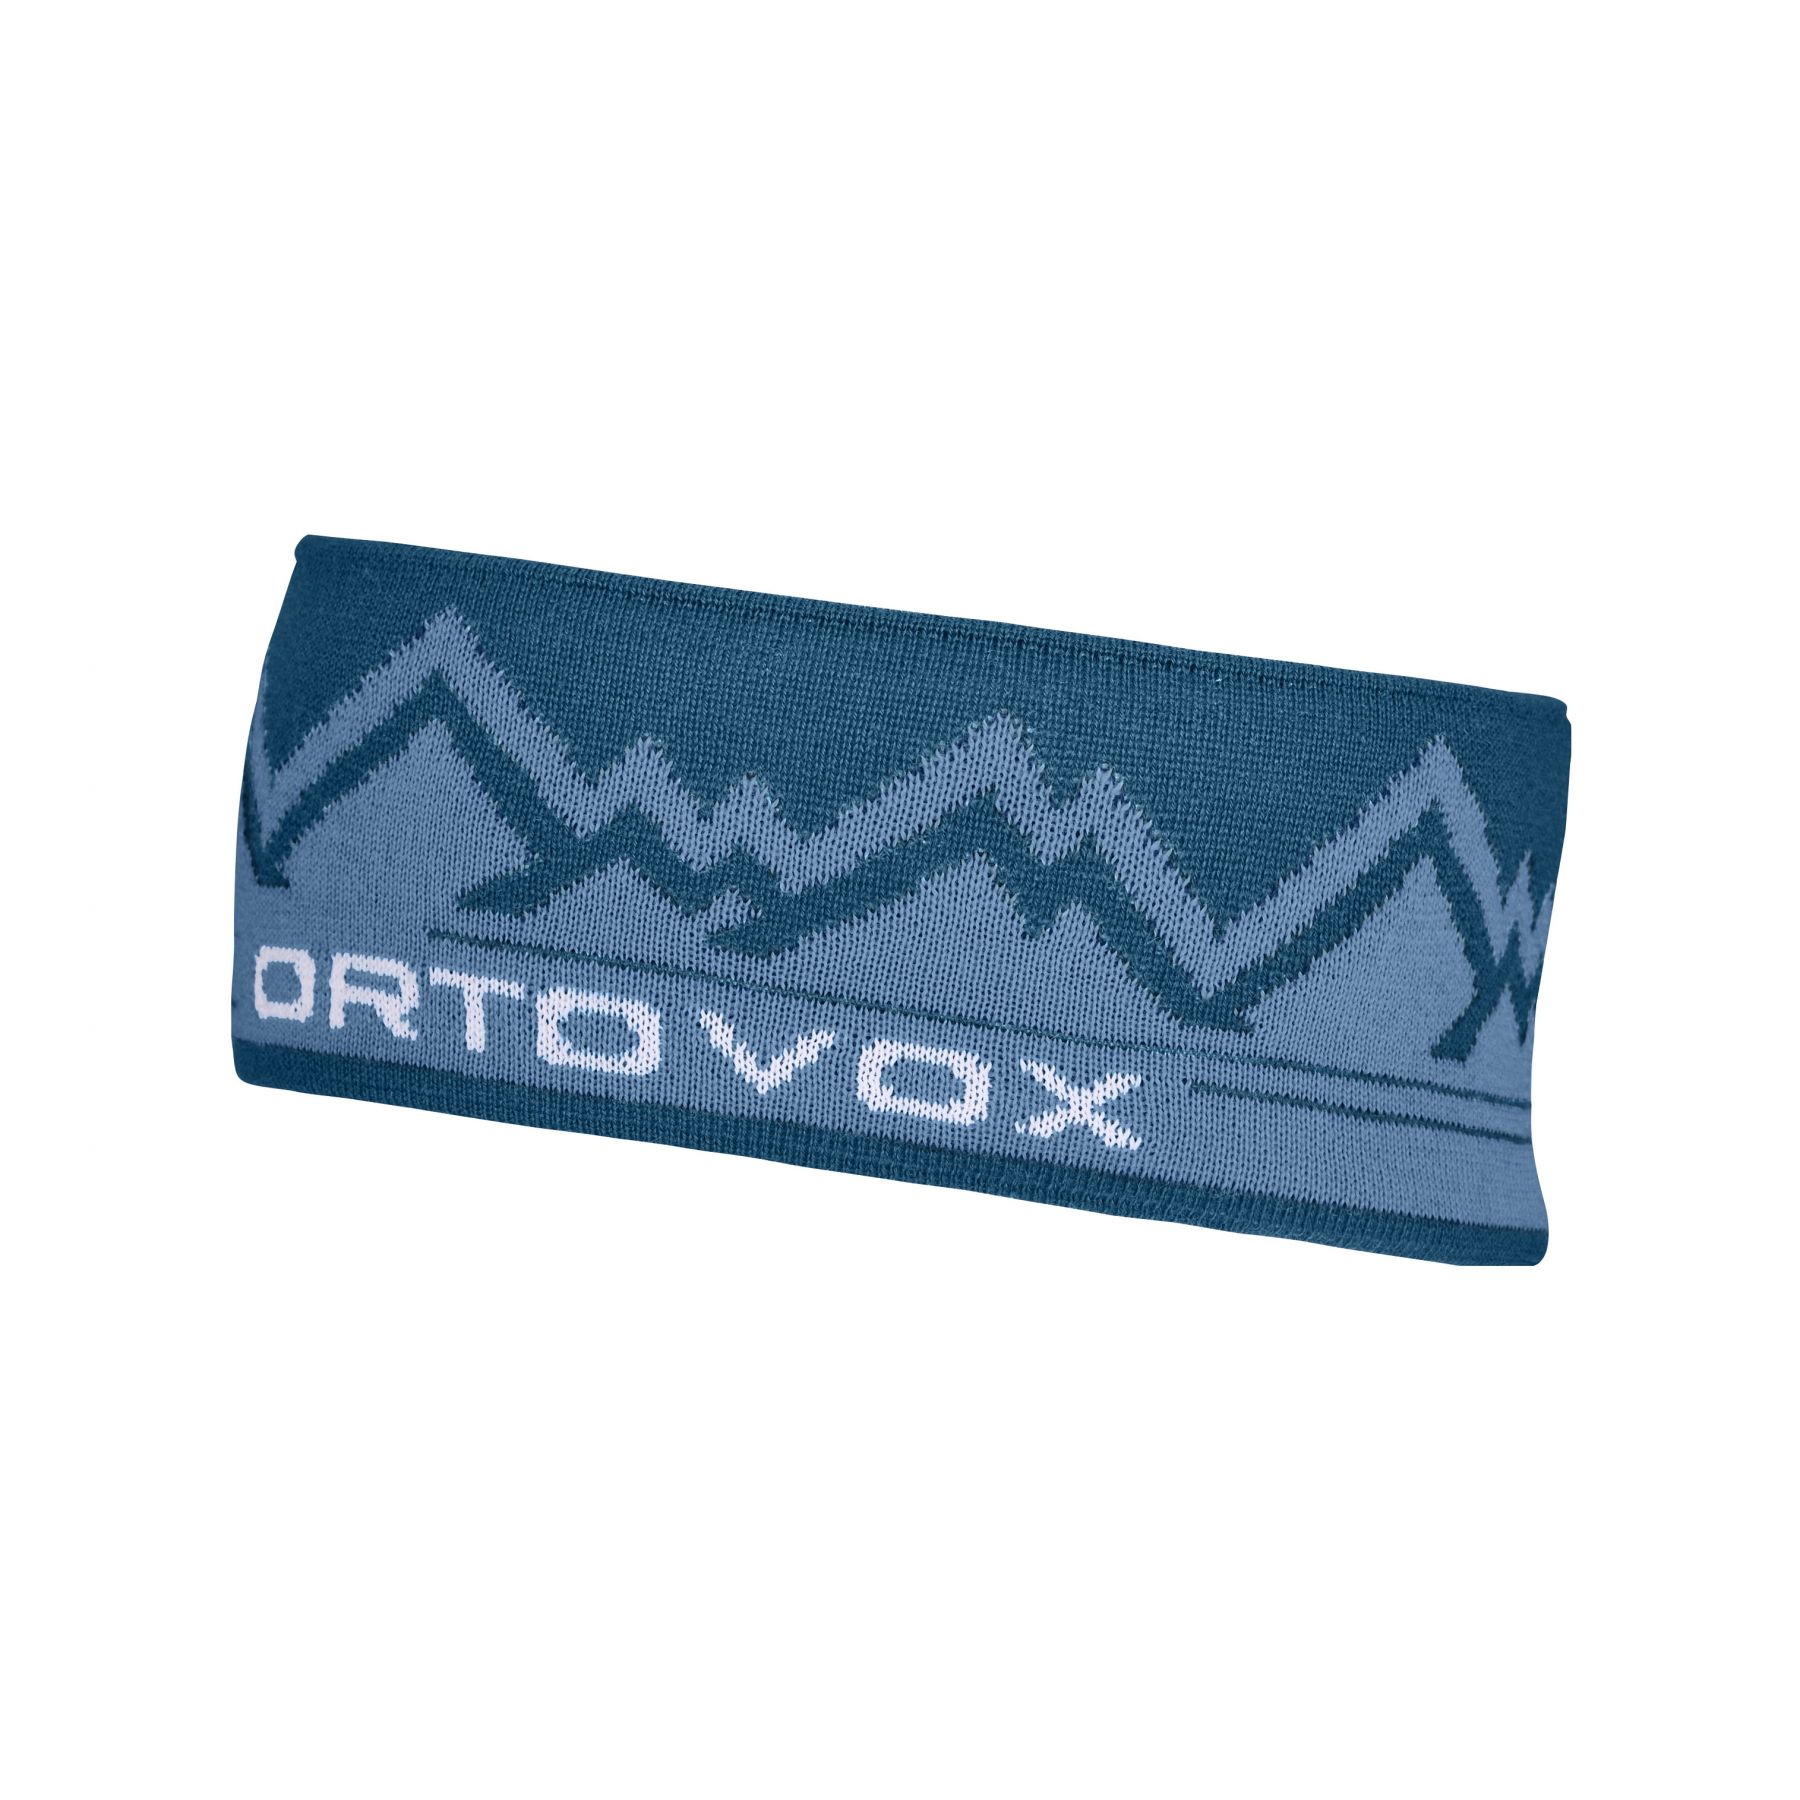 Brug Ortovox Peak, pandebånd, blå til en forbedret oplevelse